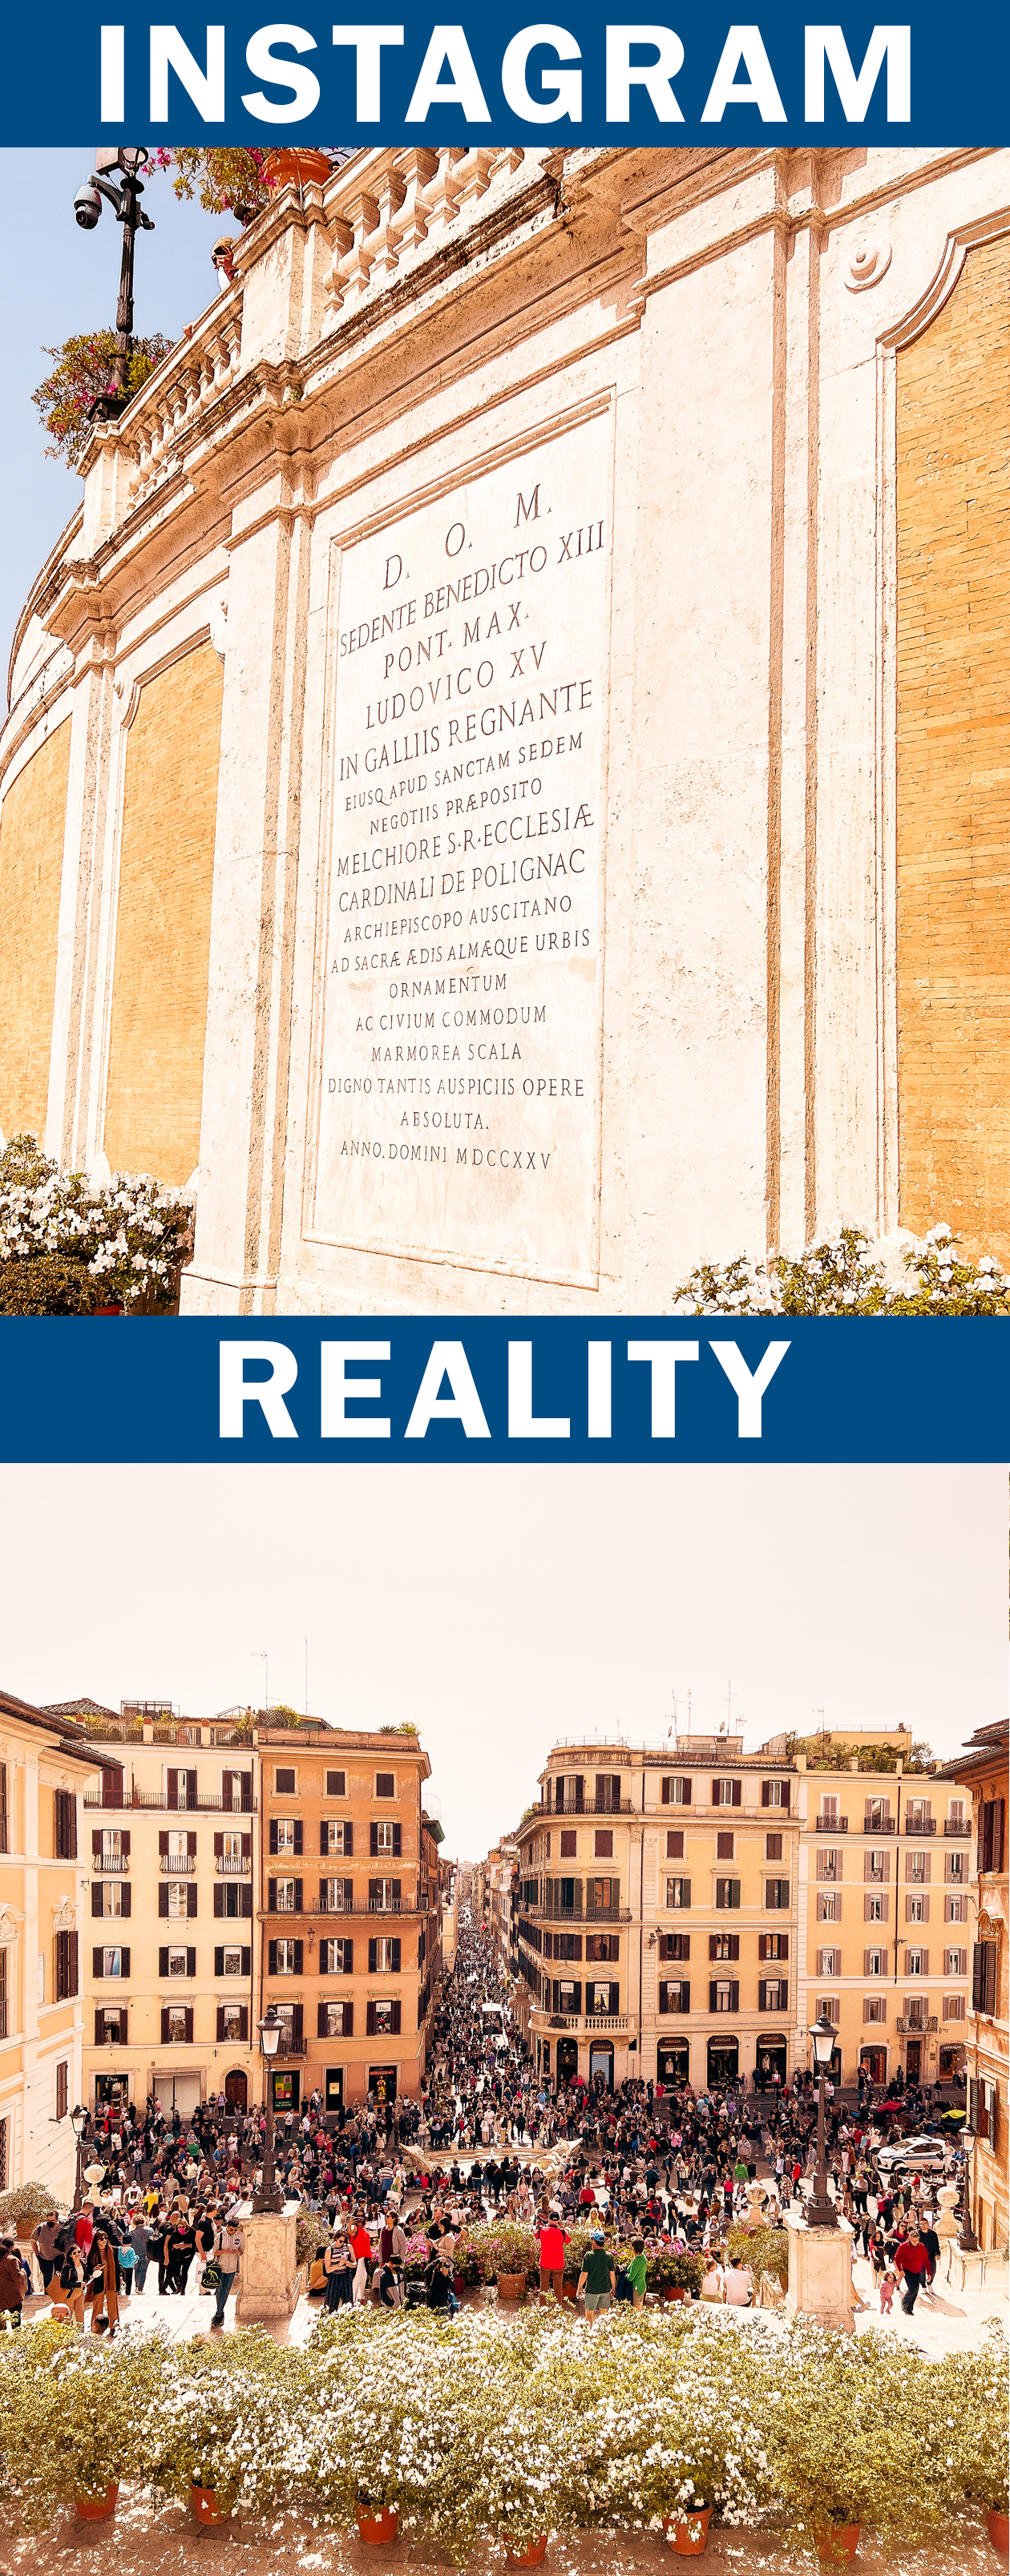 Instagram vs reality in Rome